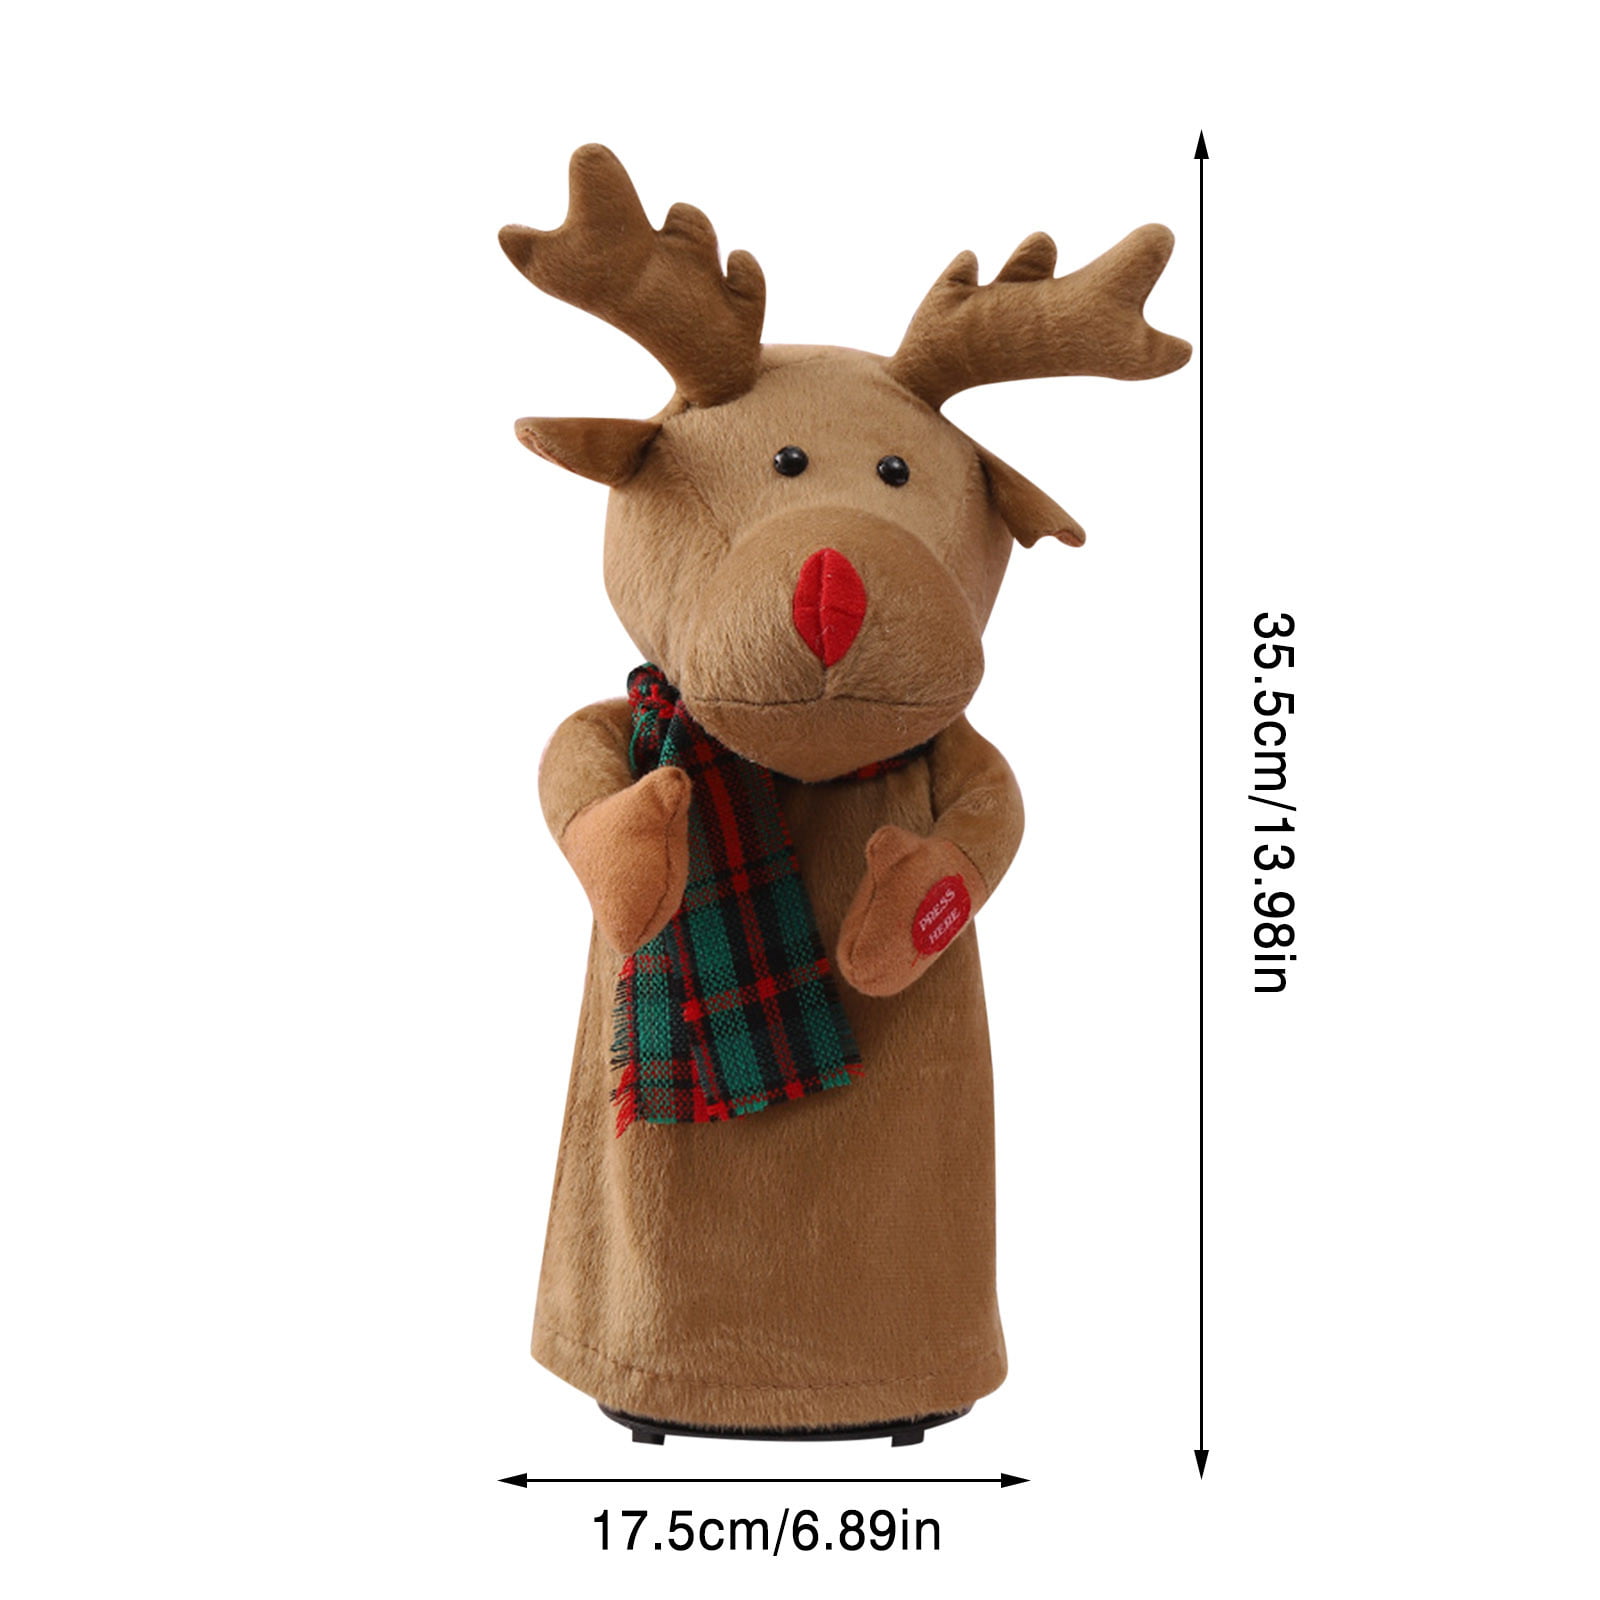 Reindeer Moose Stuffed Toy Long COD Shopee Philippines | Cute Brown ...